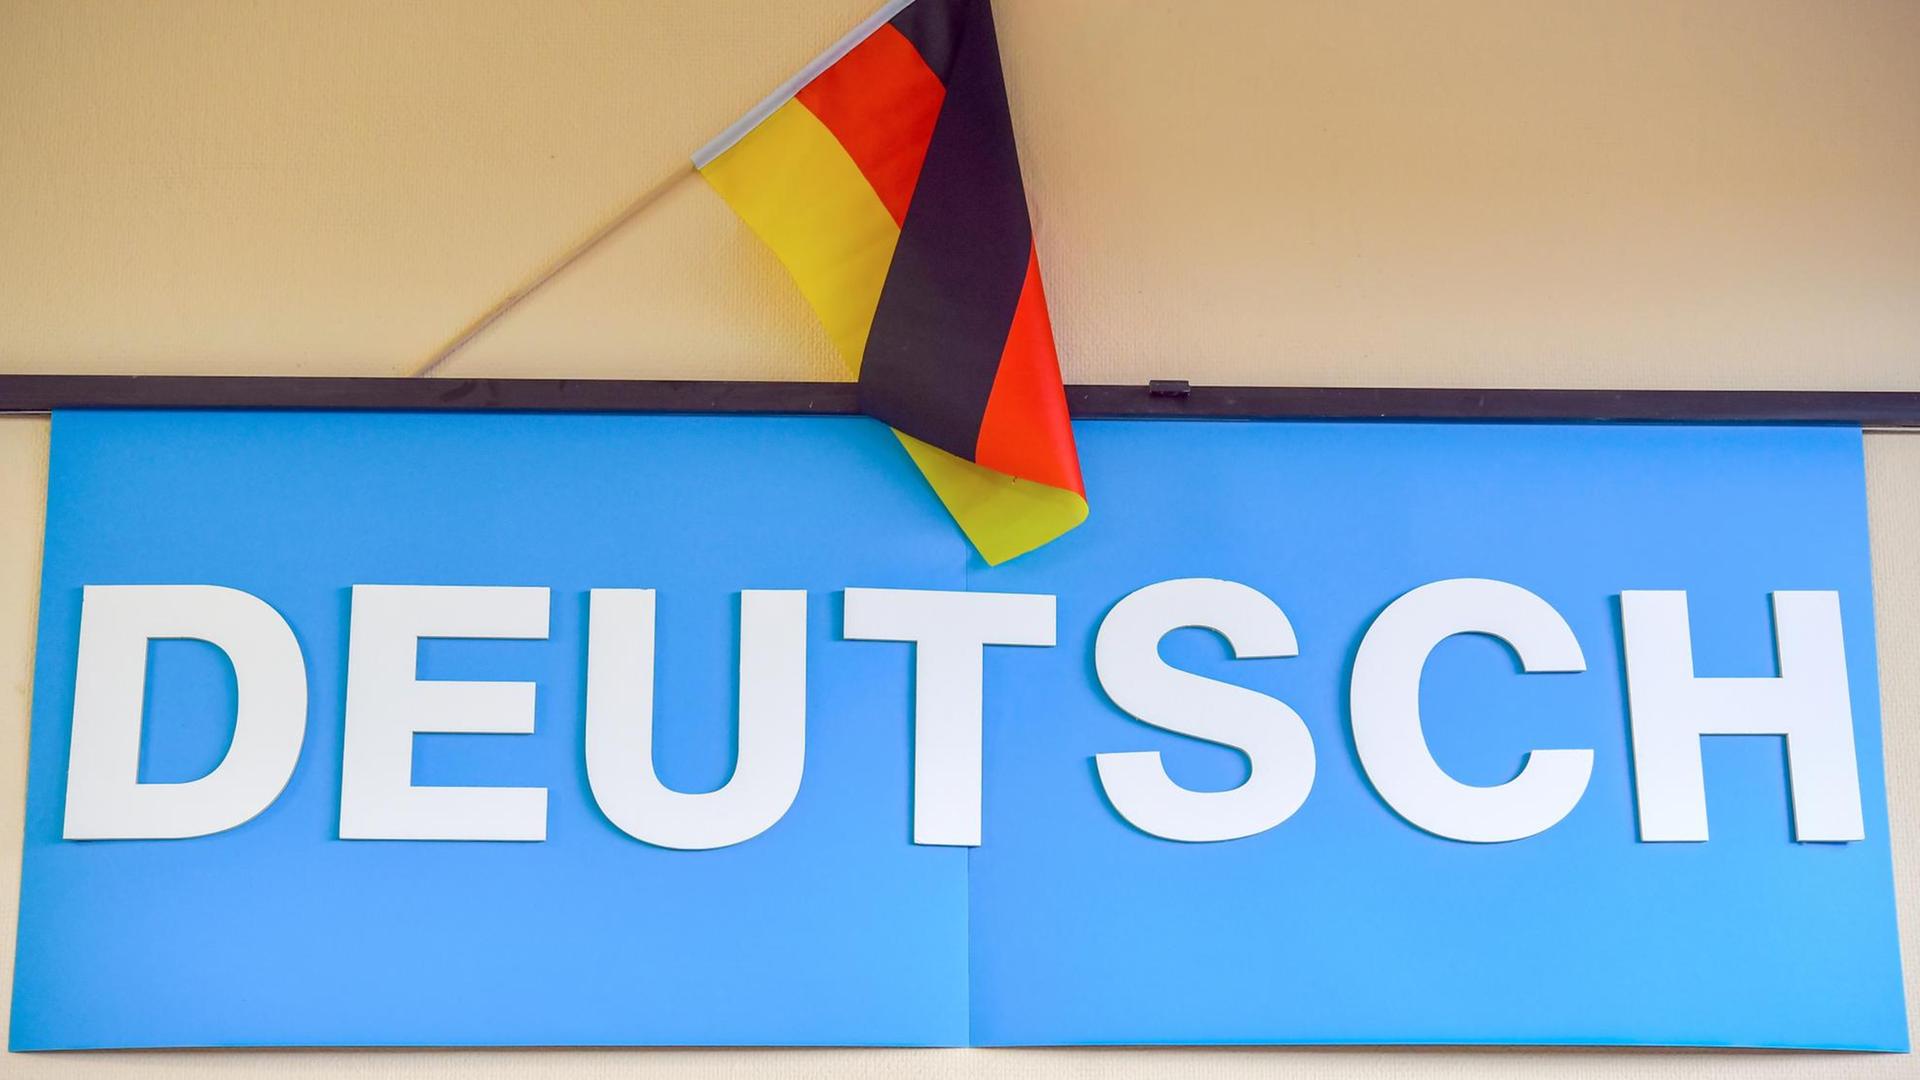 Das Foto zeigt ein blaues Plakat mit dem Text "Deutsch" in  großen Buchstaben, dahinter befindet sich eine Deutschlandfahne.